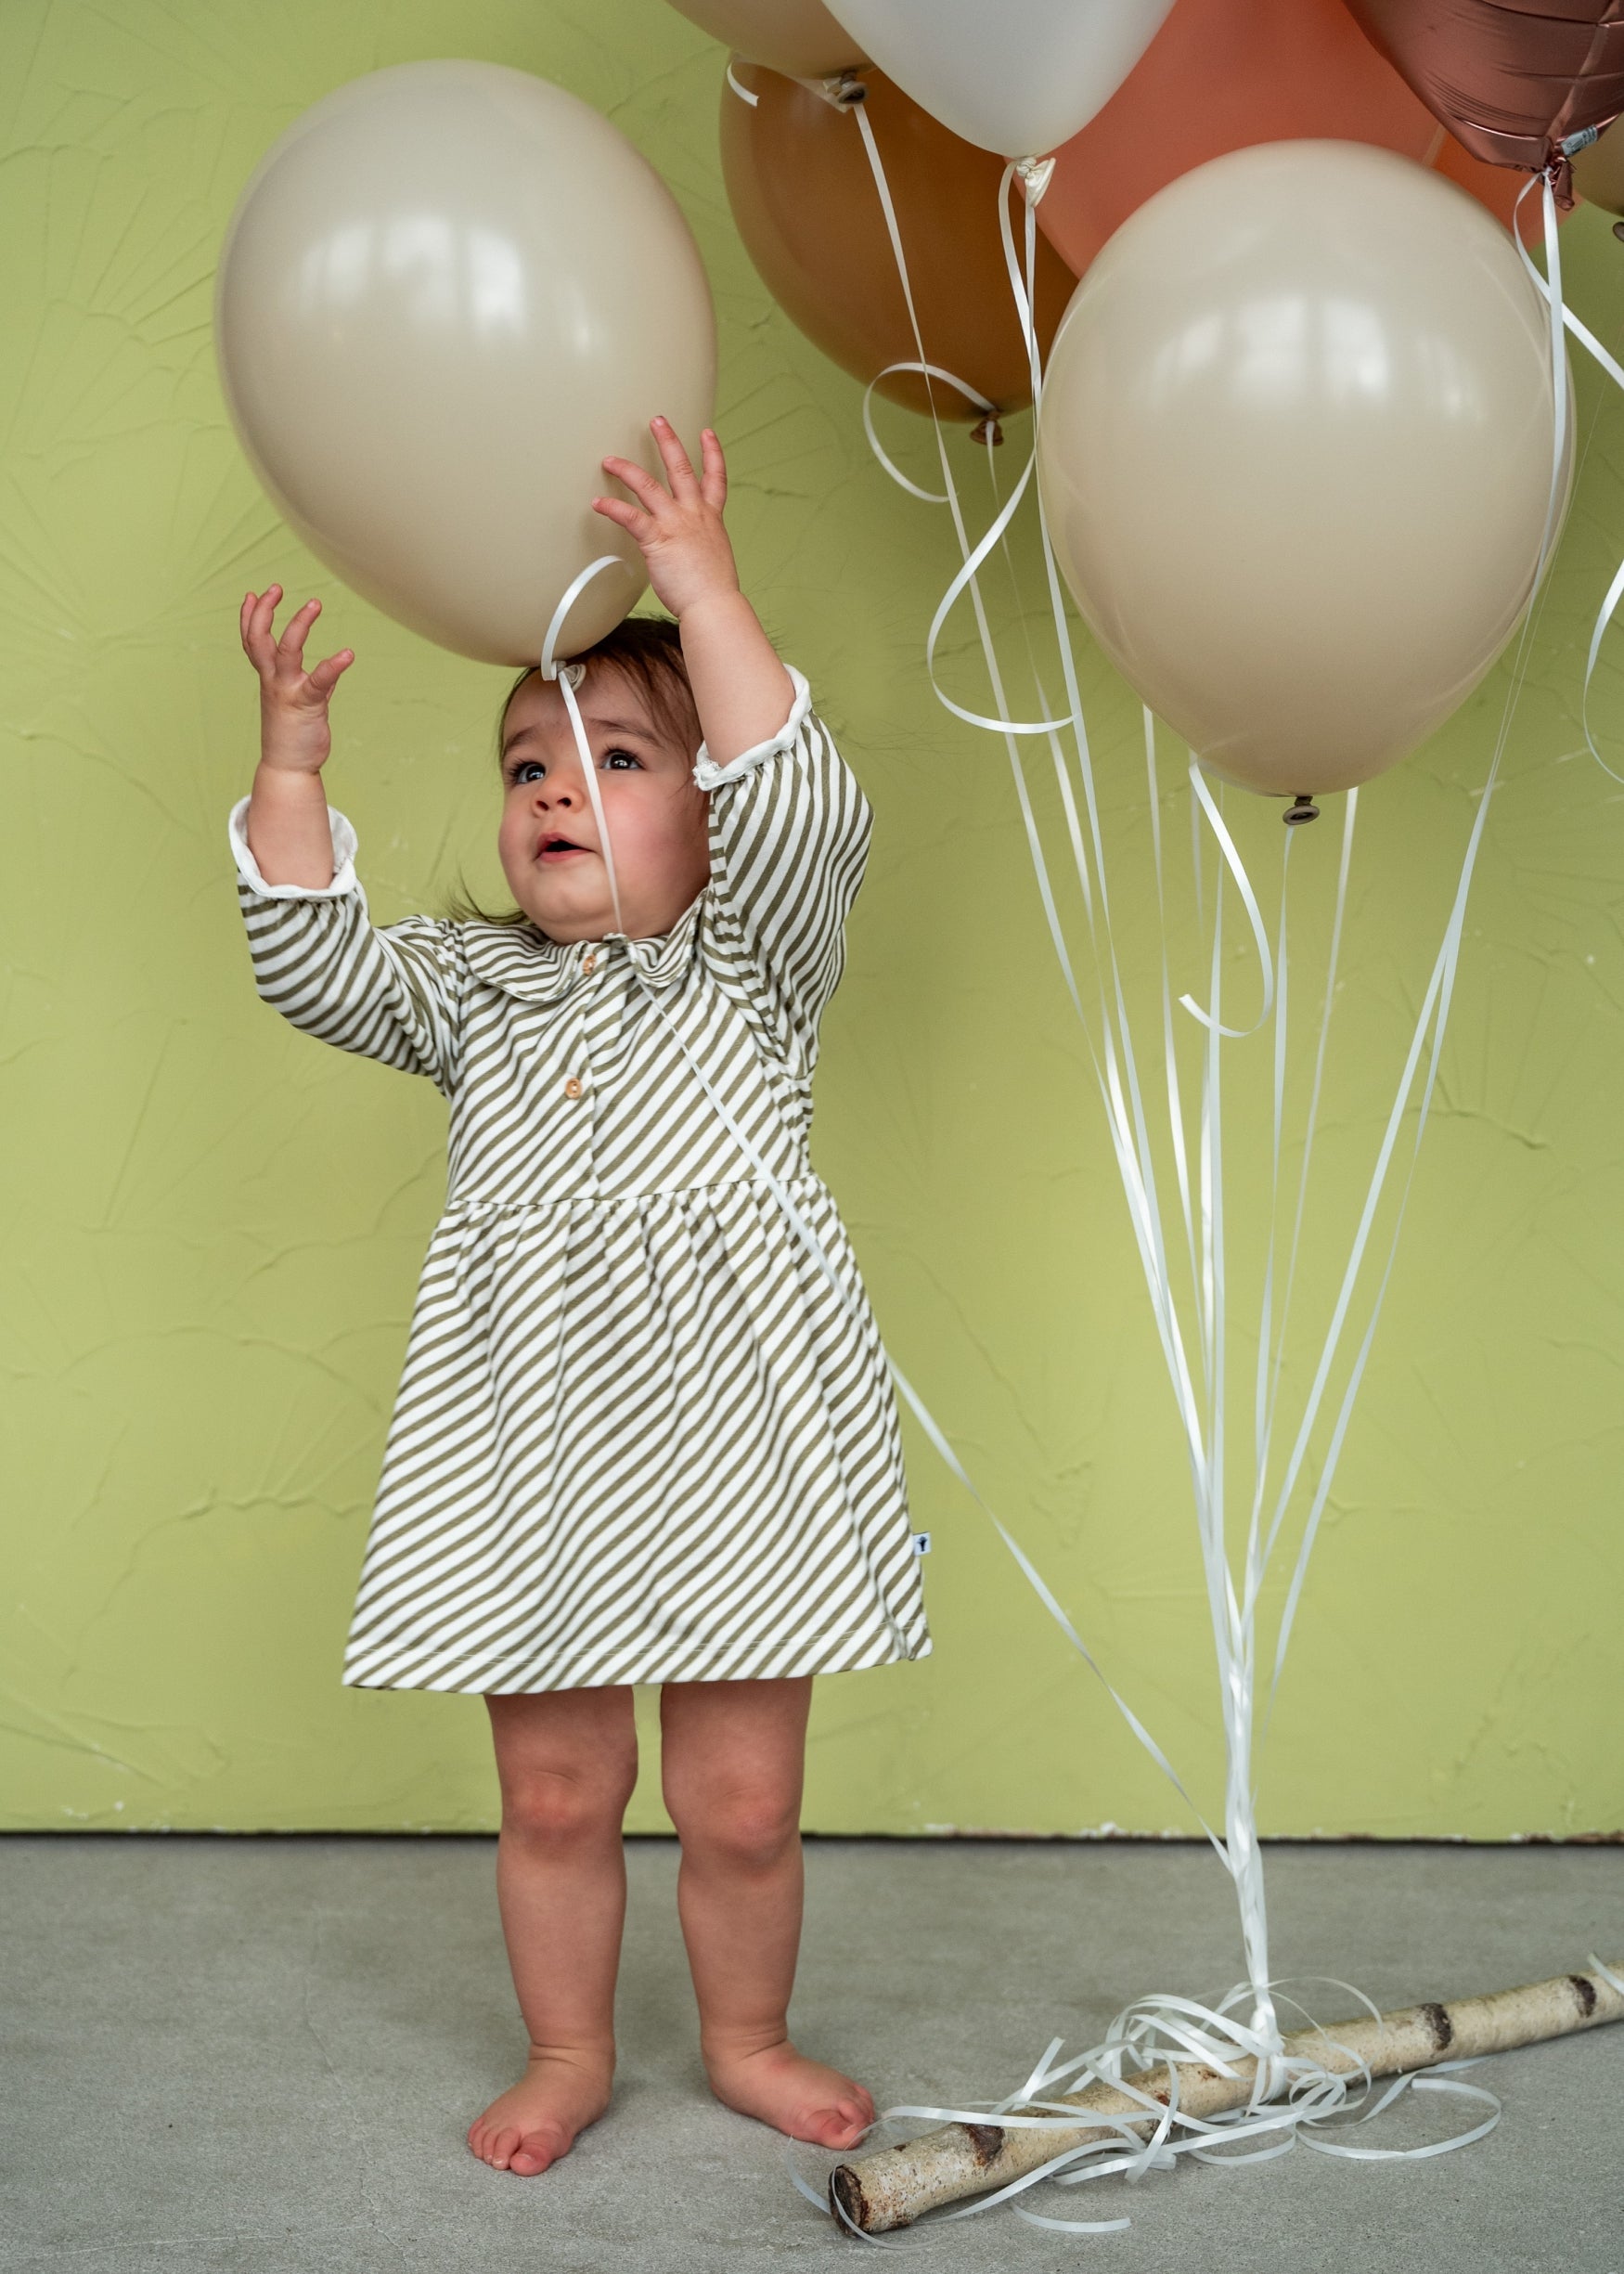 Meisjes Dress Polo Longsleeve van Klein Baby in de kleur Stripe Off White/Twill in maat 74.